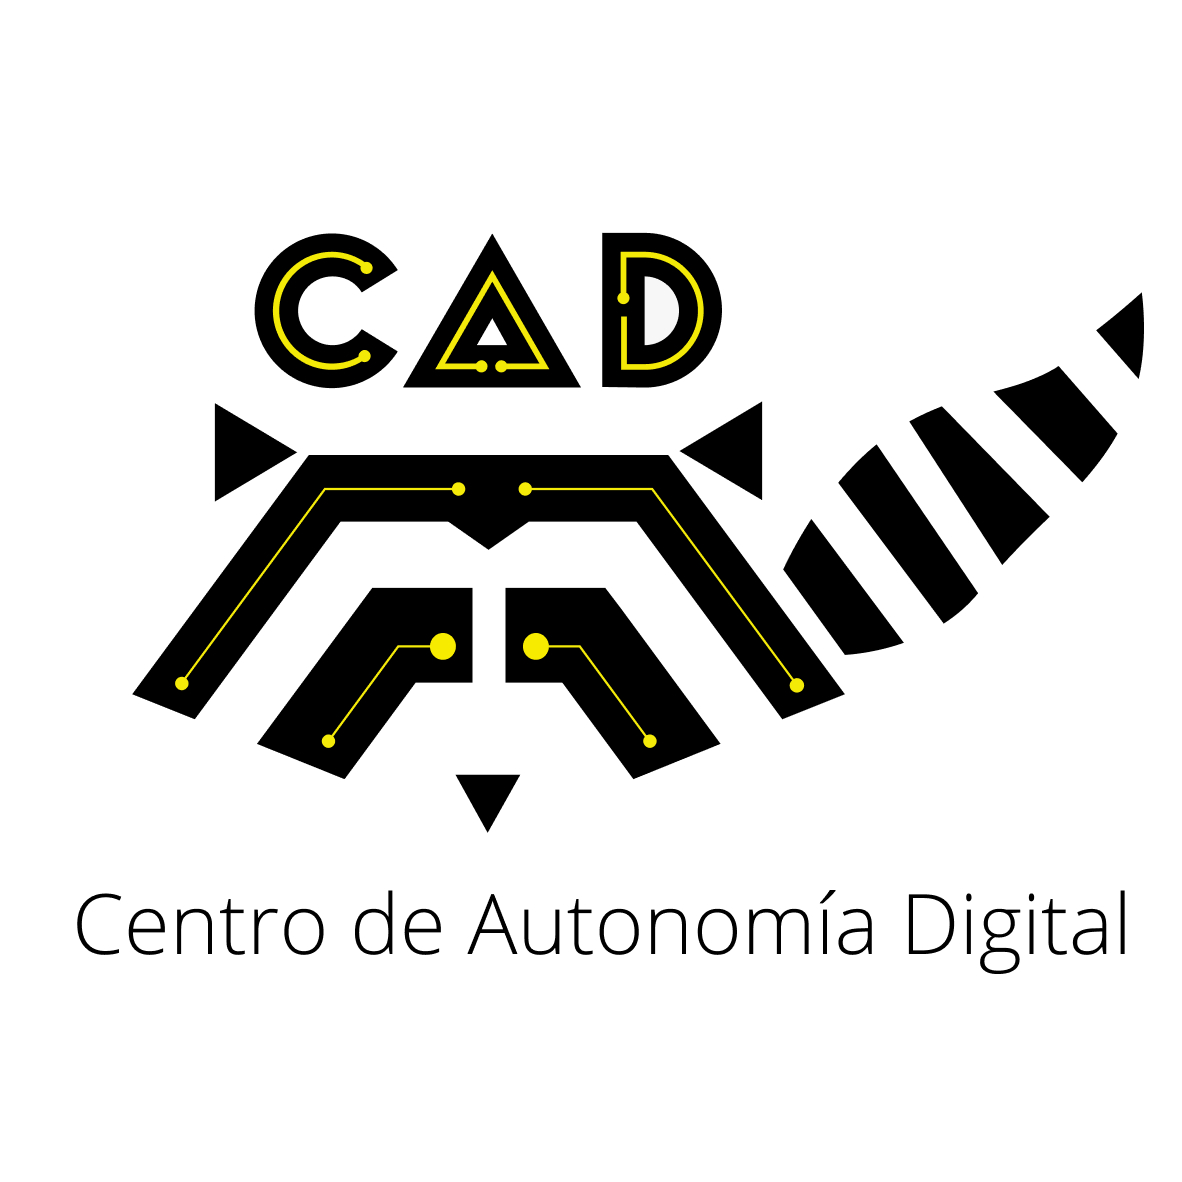 Centro de Autonomia Digital